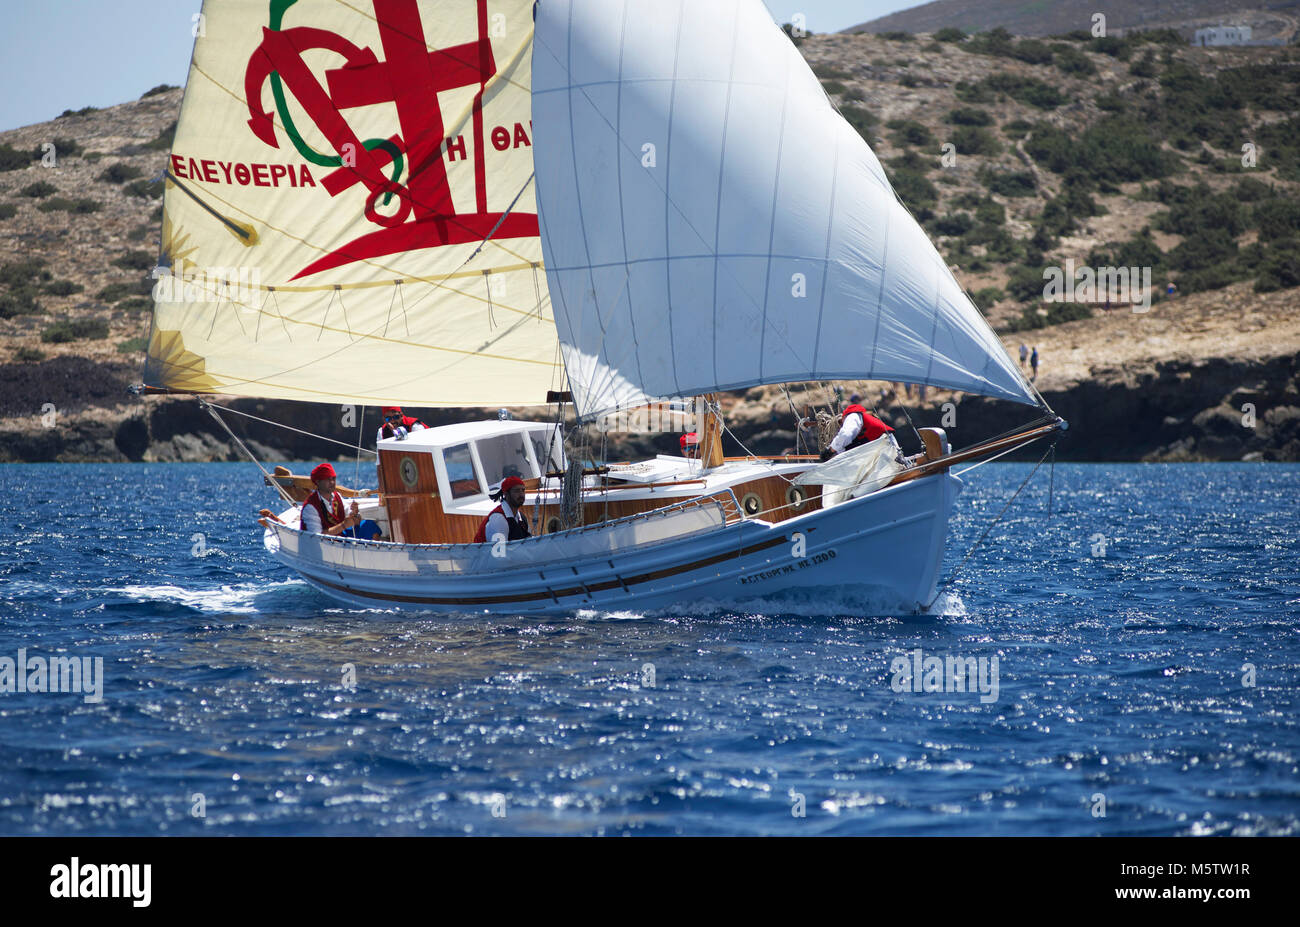 Traditionelles griechisches Fischerboot Agios Georgios aus Segeln in den Kykladen Syros Classic Yacht Race. Die Crew tragen Tradition Kostüm. Stockfoto